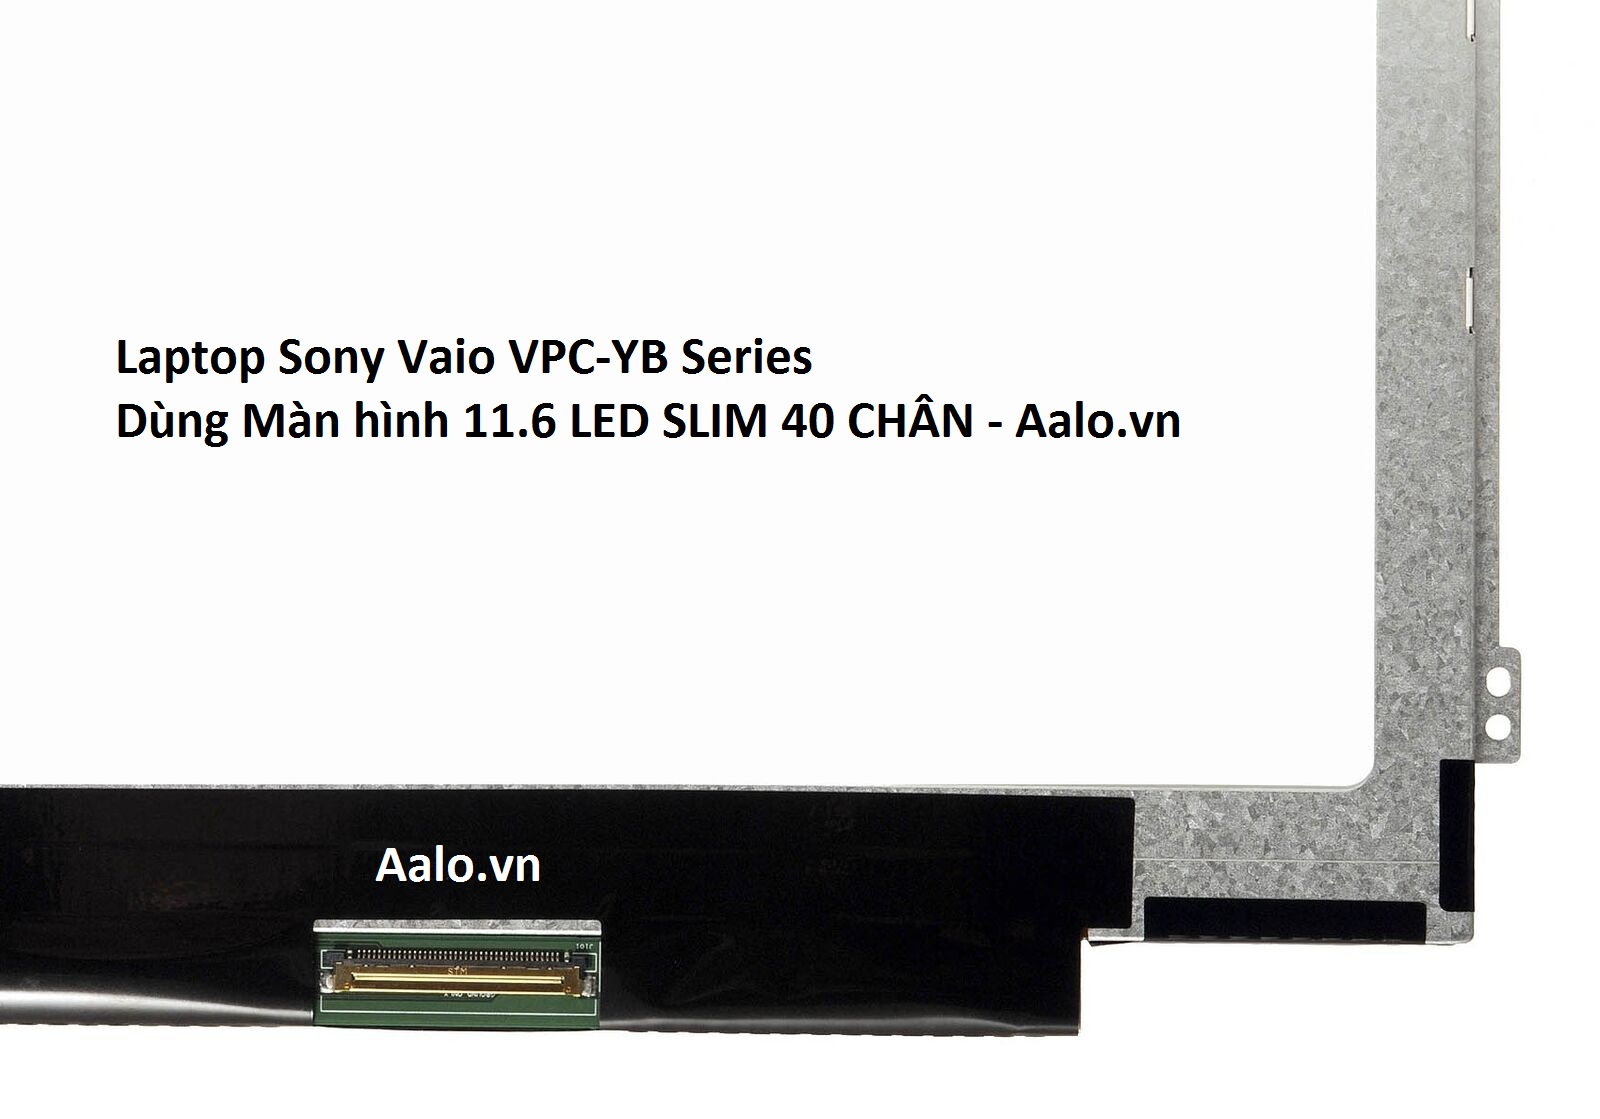 Màn hình Laptop Sony Vaio VPC-YB Series - Aalo.vn